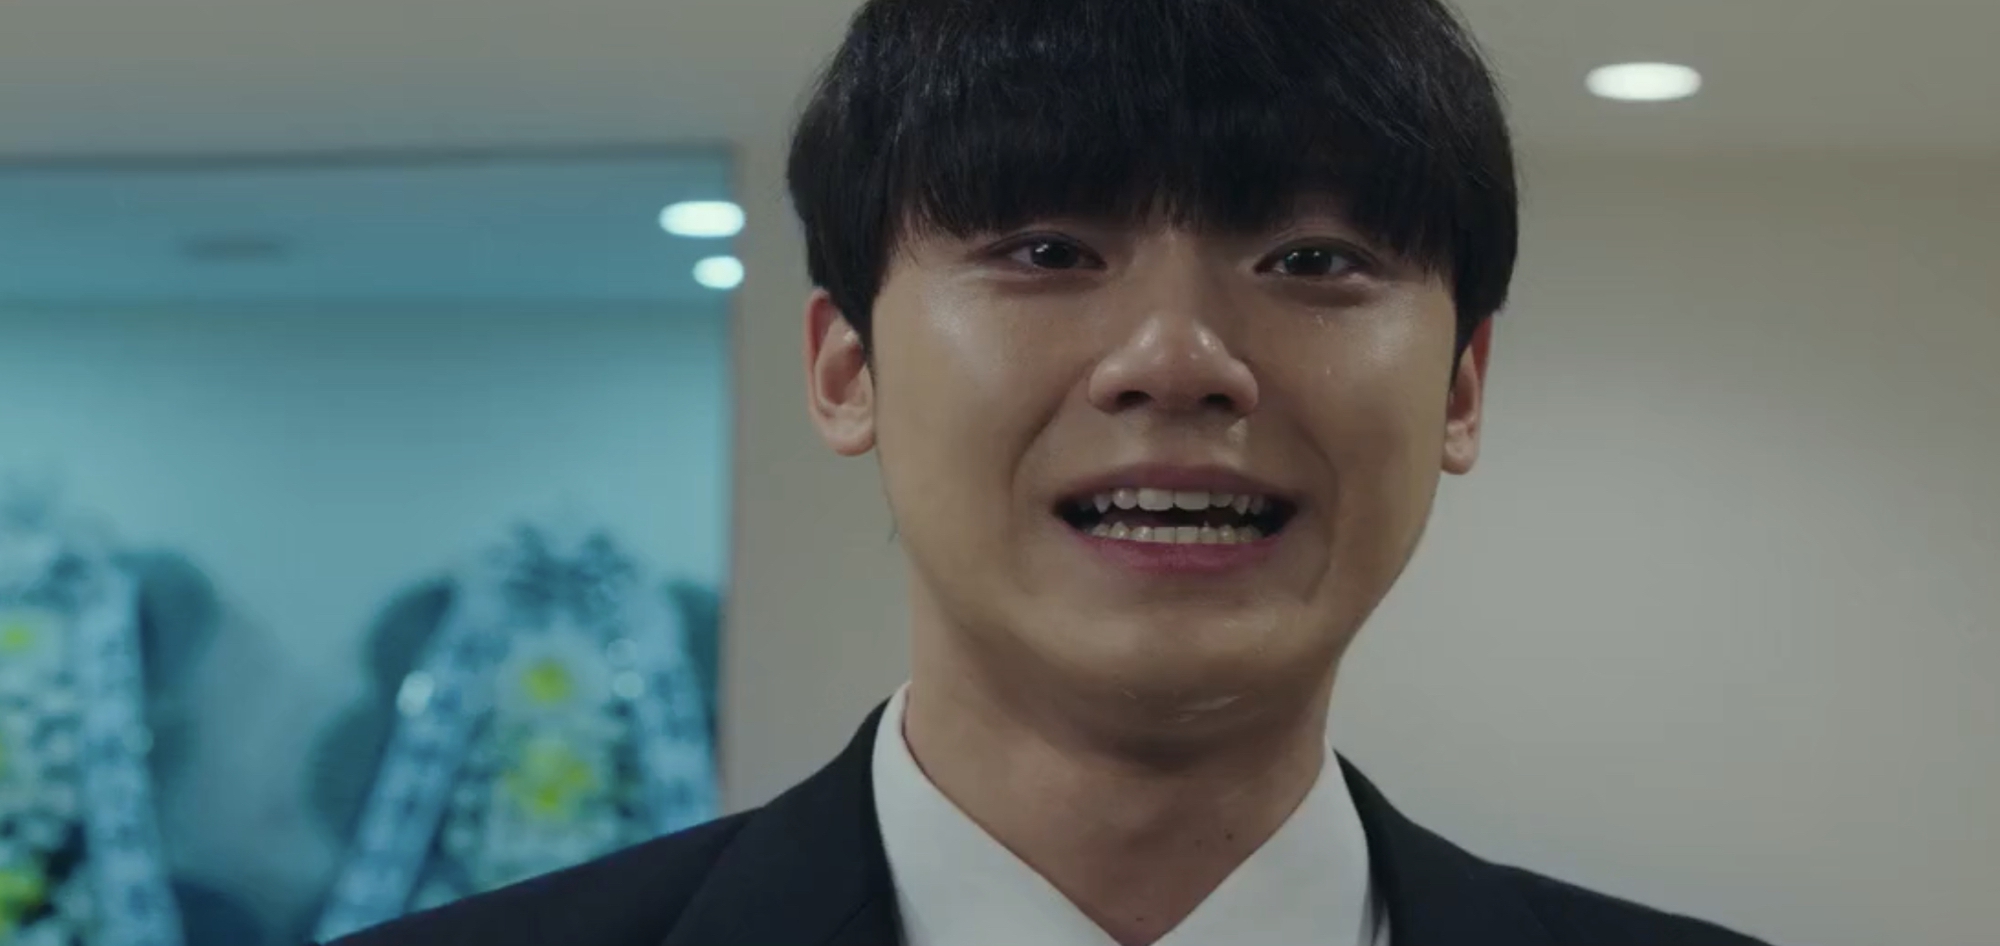 Lee Do Hyun thắng phản diện nhưng vẫn nhận kết buồn ở tập cuối, tỷ suất người xem bùng nổ ấn tượng - Ảnh 8.